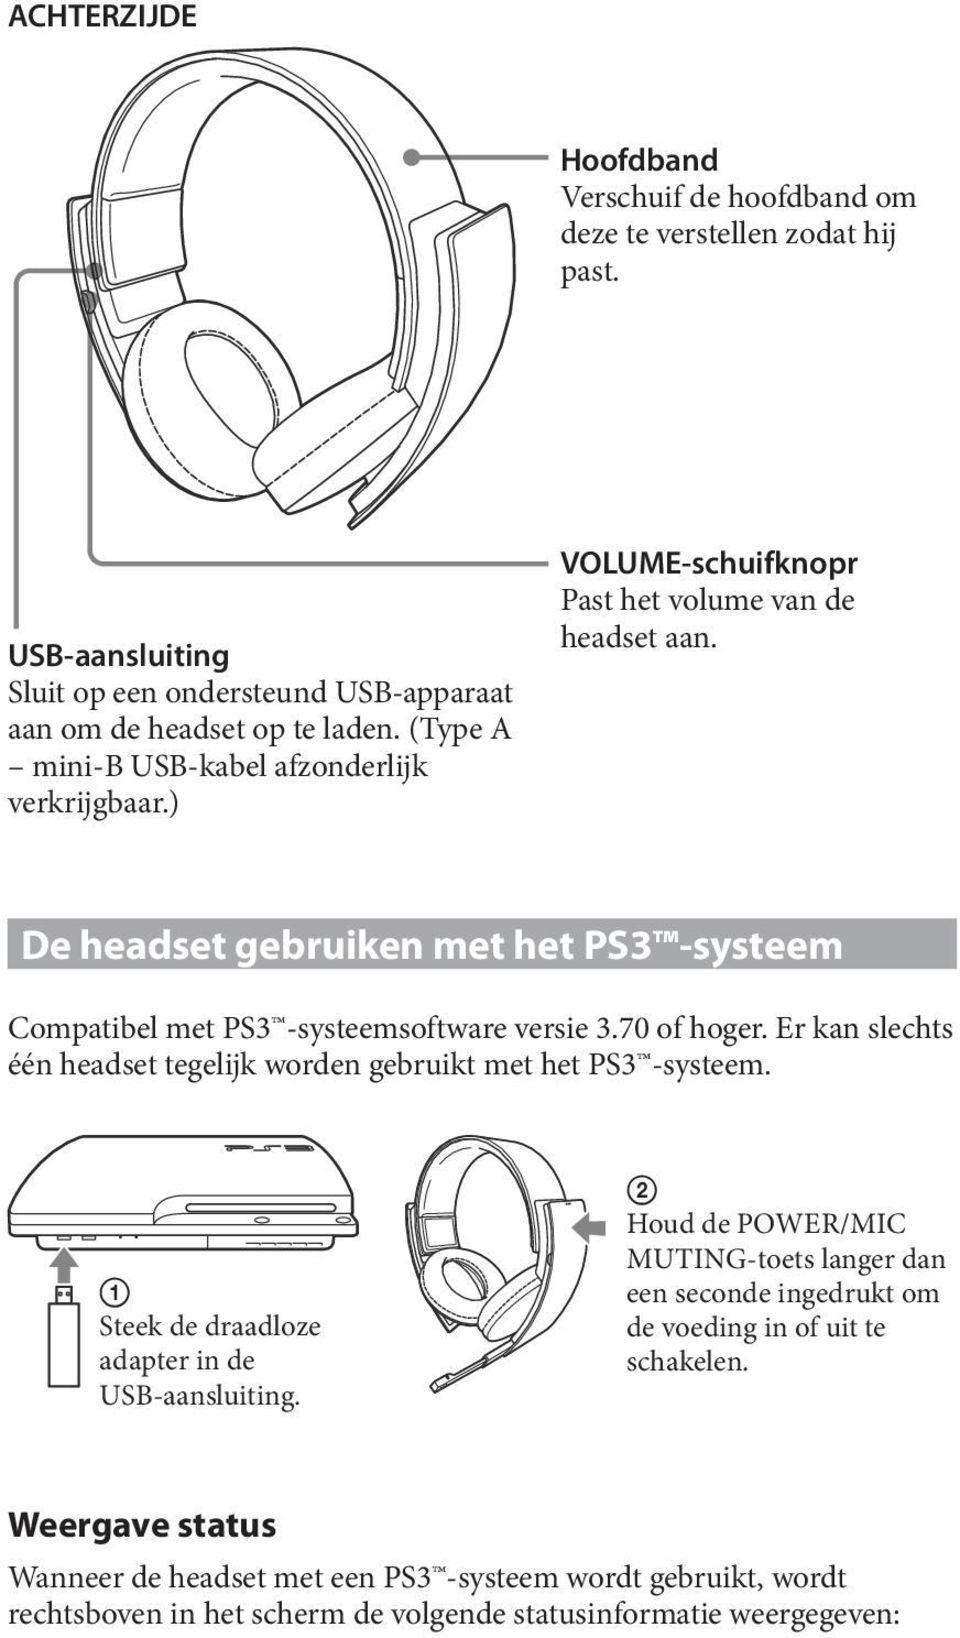 De headset gebruiken met het PS3 -systeem Compatibel met PS3 -systeemsoftware versie 3.70 of hoger. Er kan slechts één headset tegelijk worden gebruikt met het PS3 -systeem.